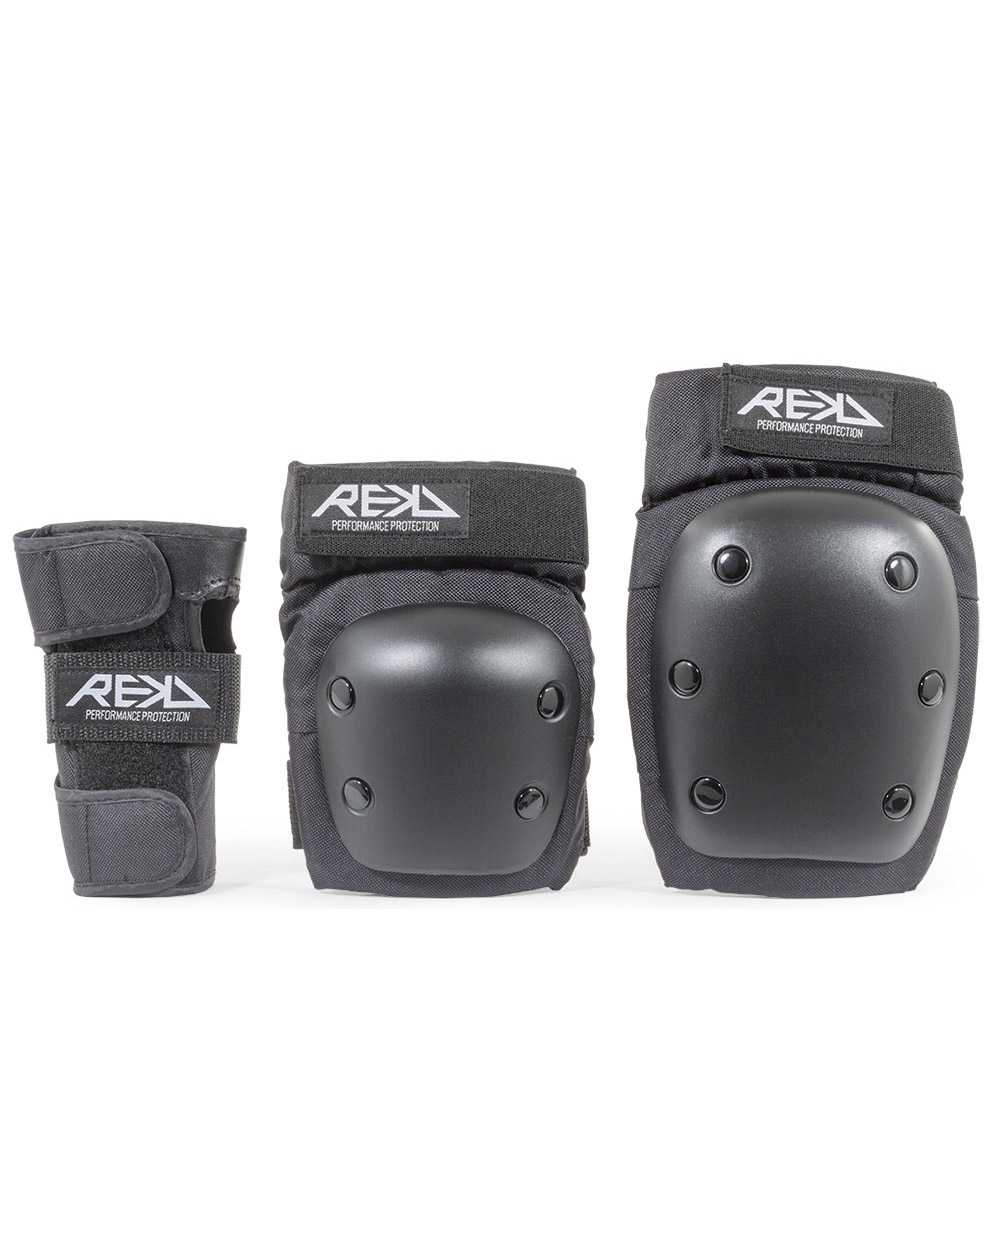 Rekd Protection Kit Proteção Skate Heavy Duty Black